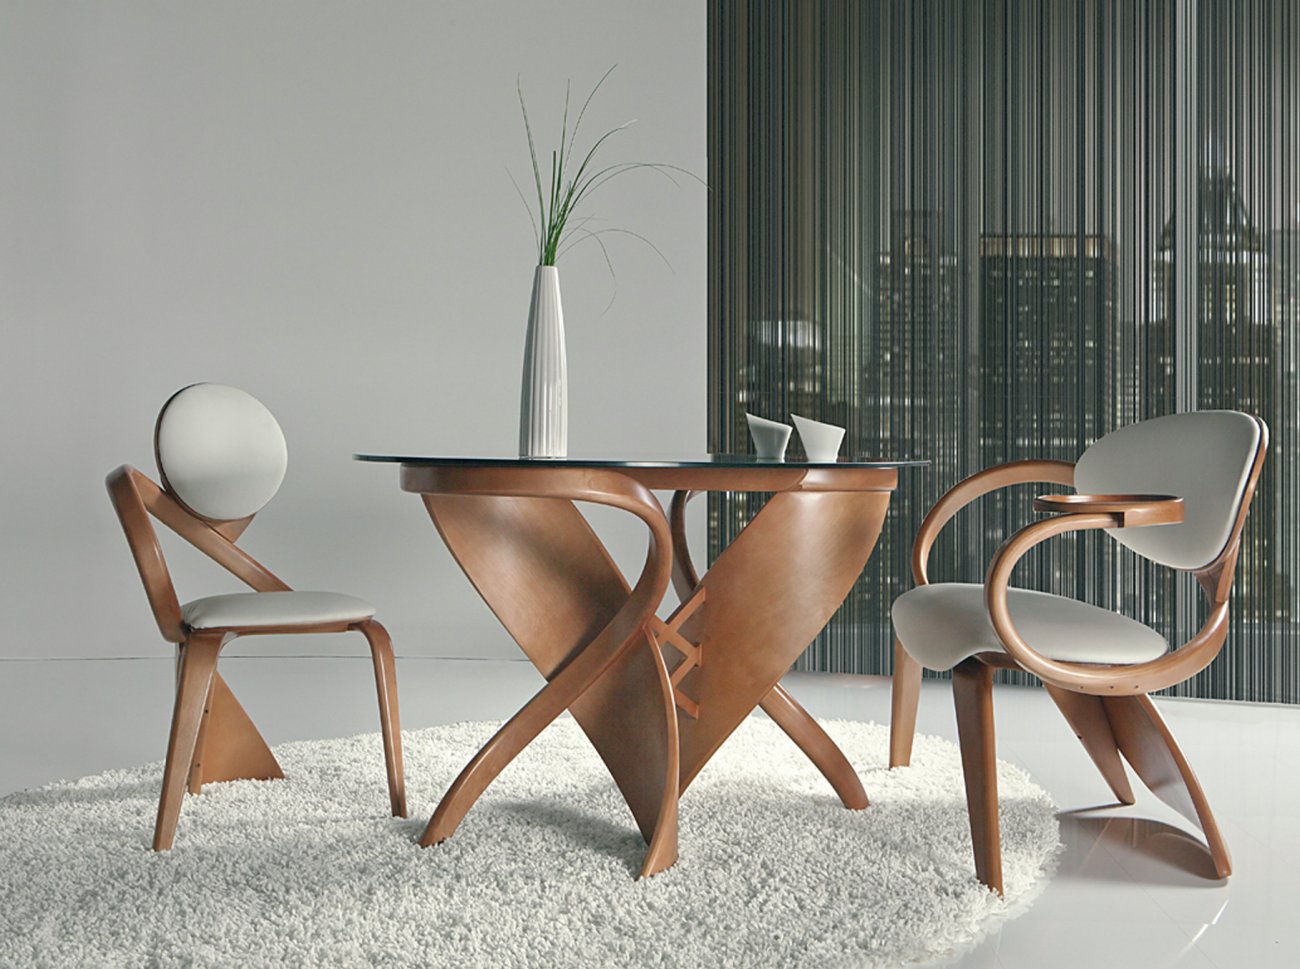 Мебель от производителя: надежность, качество и уникальный дизайн